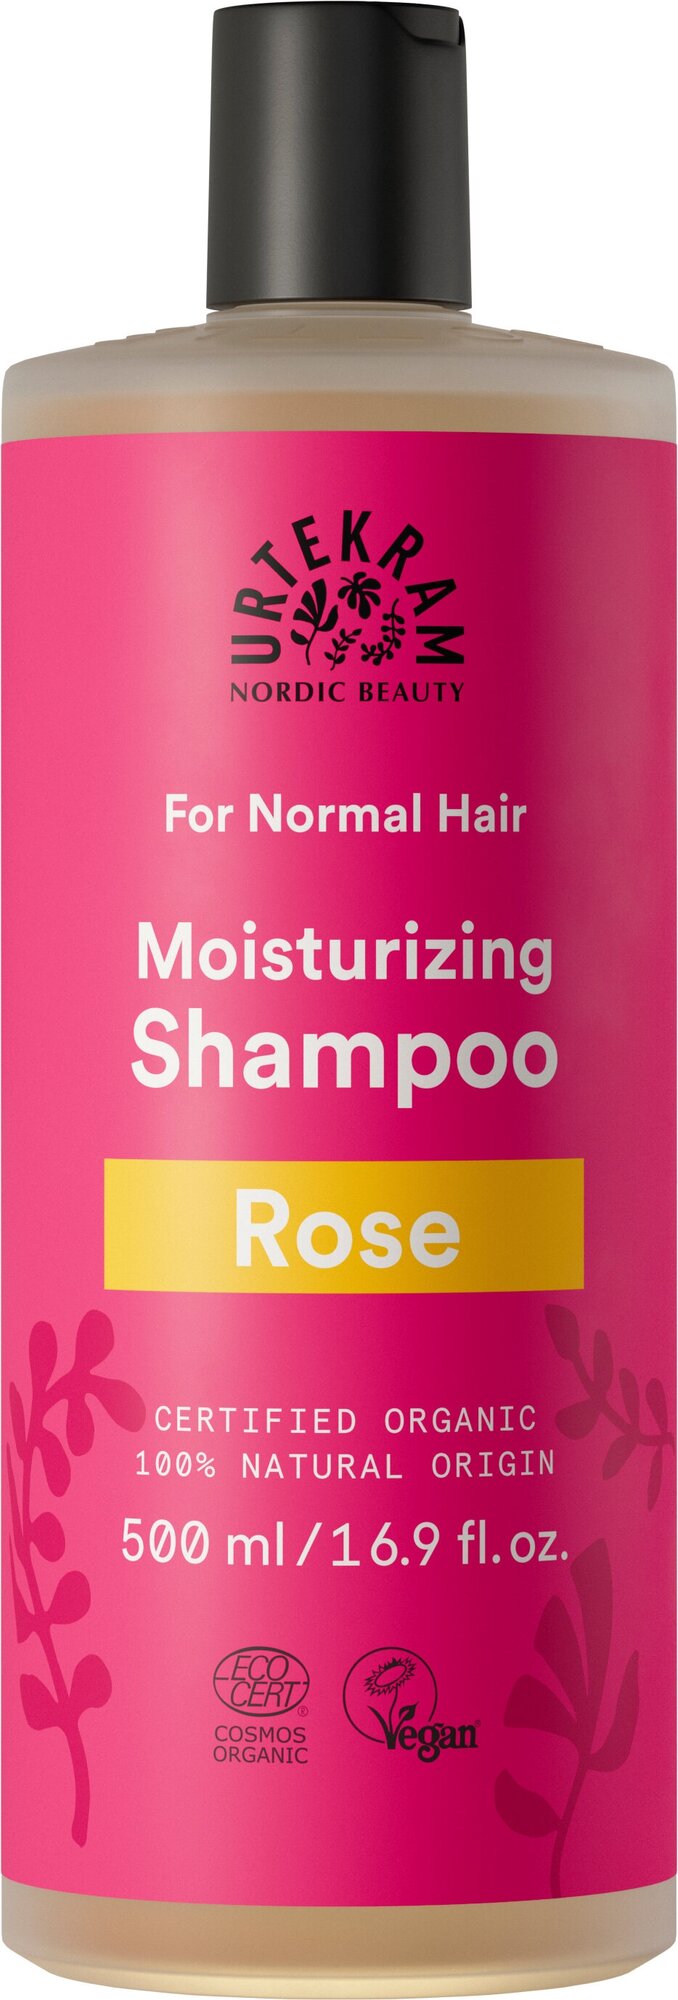 Шампунь Urtekram для нормальных волос Роза, 250 мл - фото №5